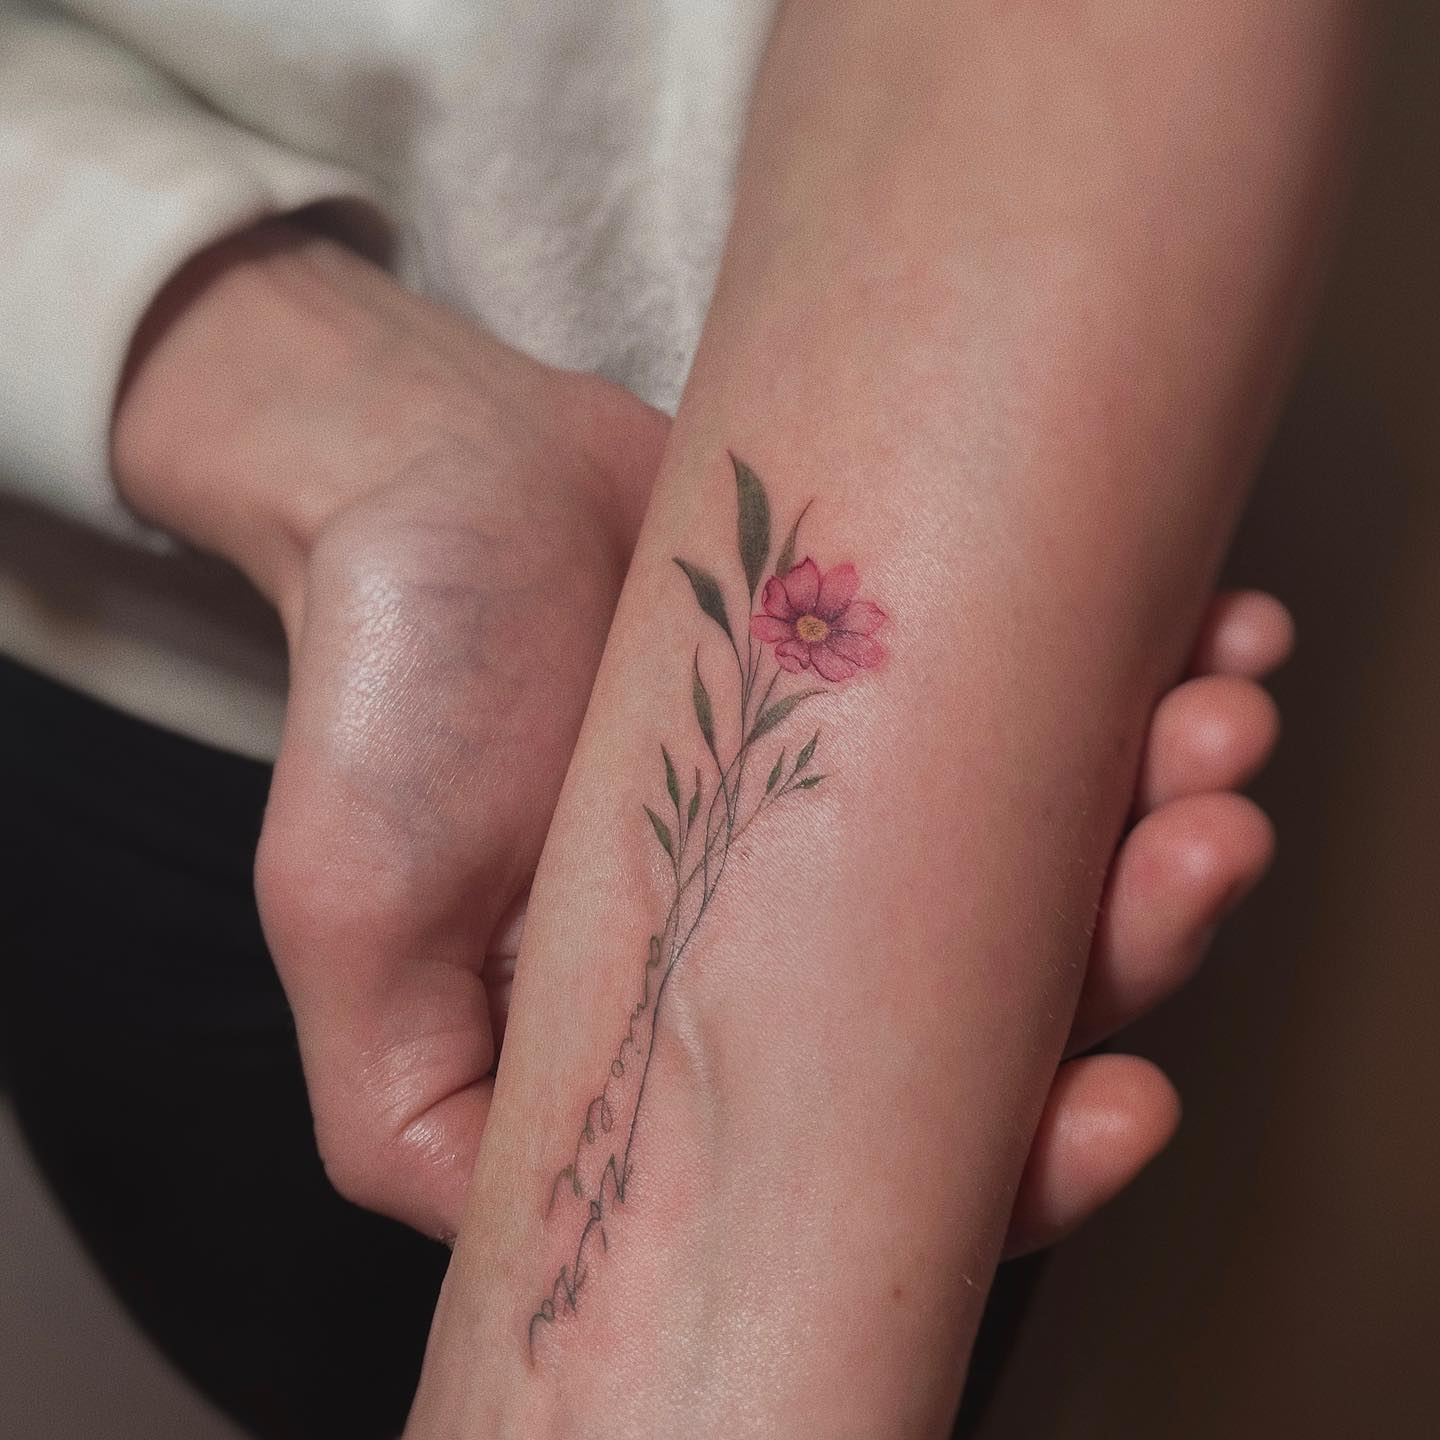 Diseños de tatuajes de flor de cosmos en el brazo.